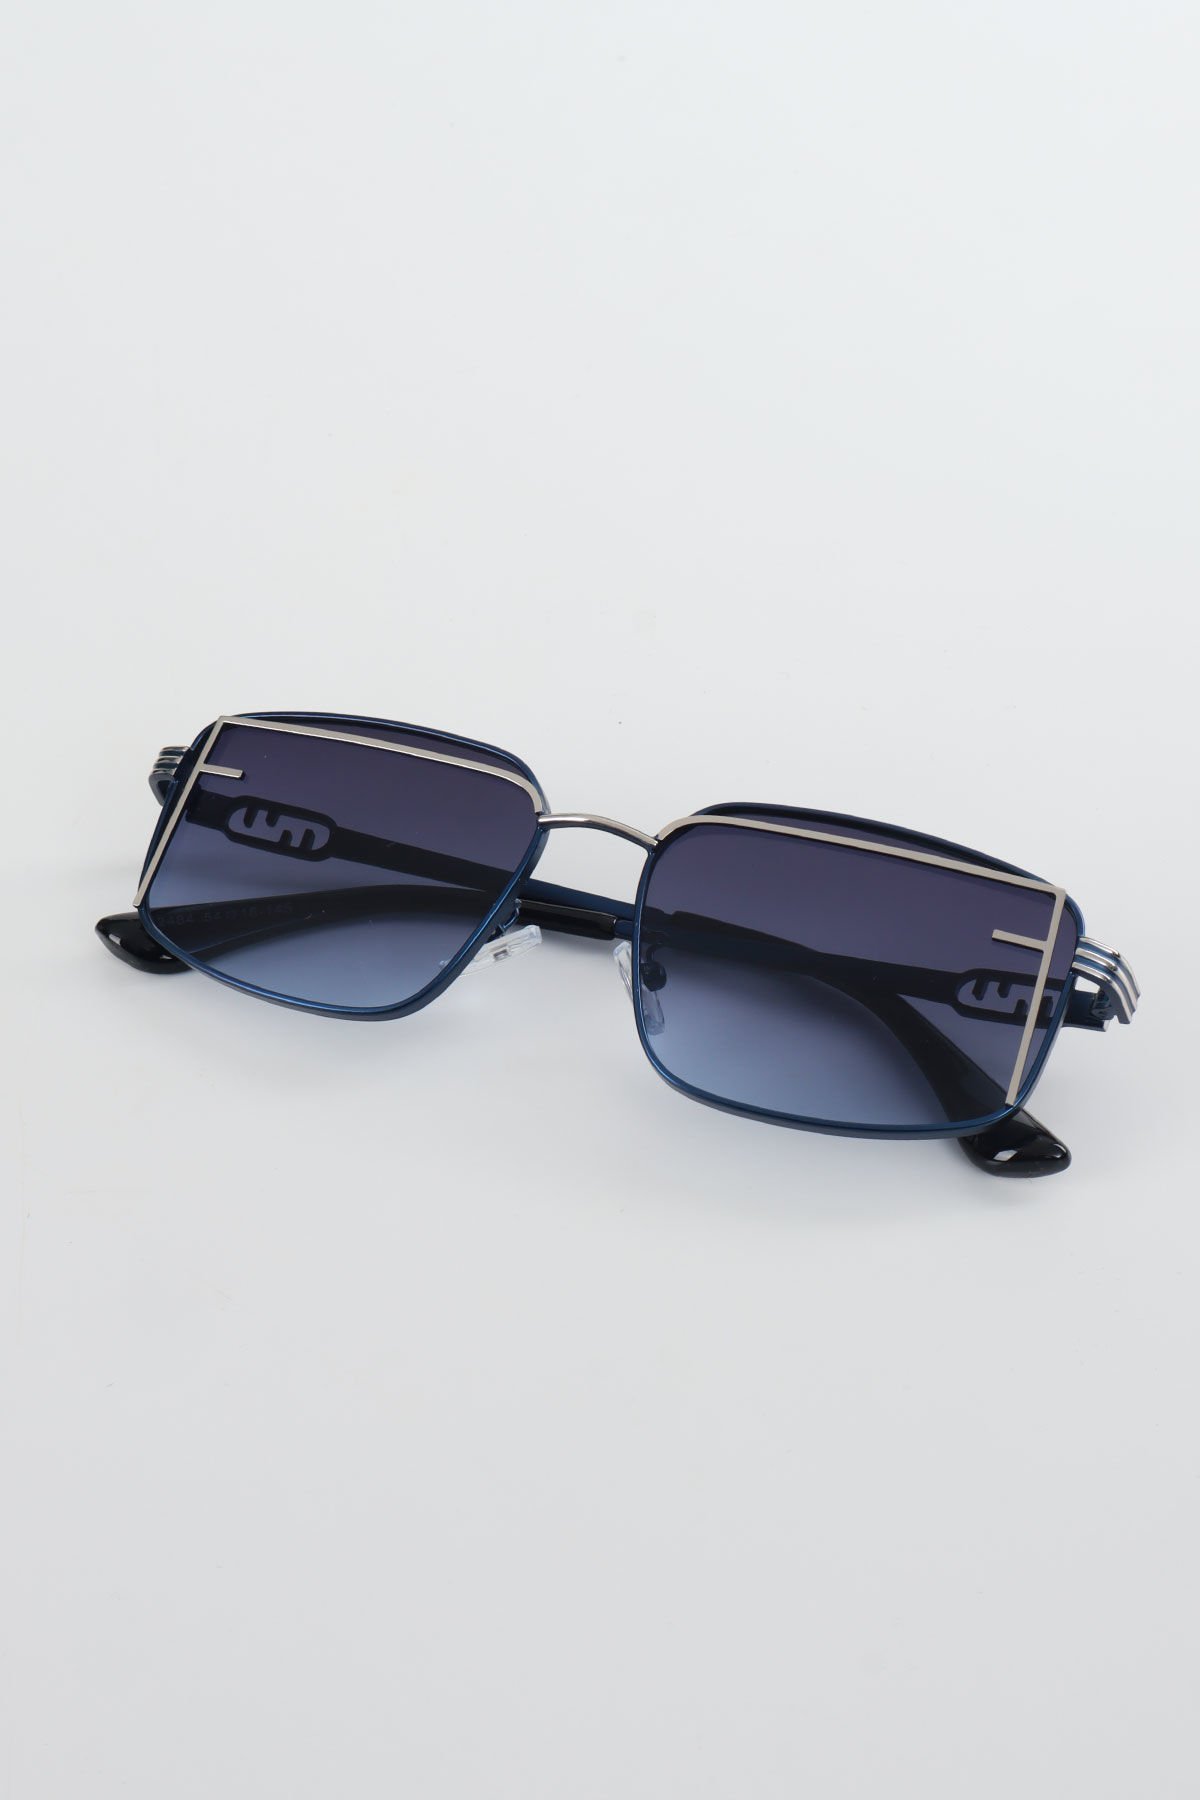 Fier Metal Premium Güneş Gözlüğü - Lacivert